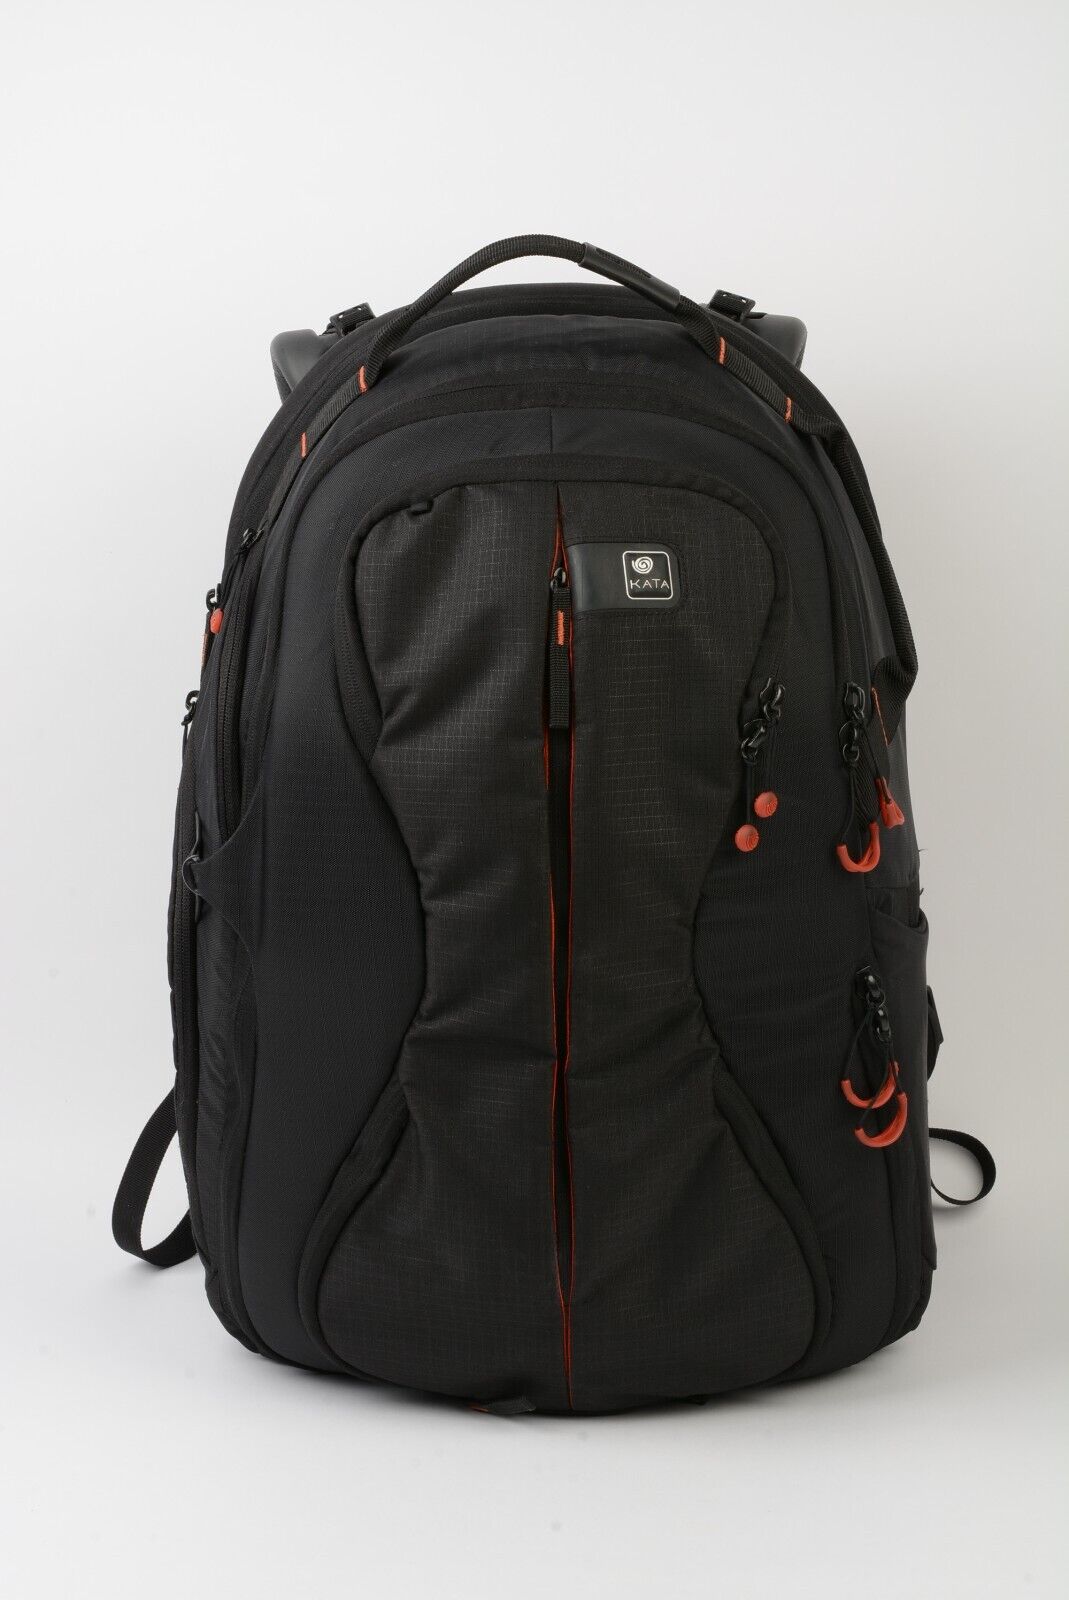 FS: KATA R-103 Camera Backpack